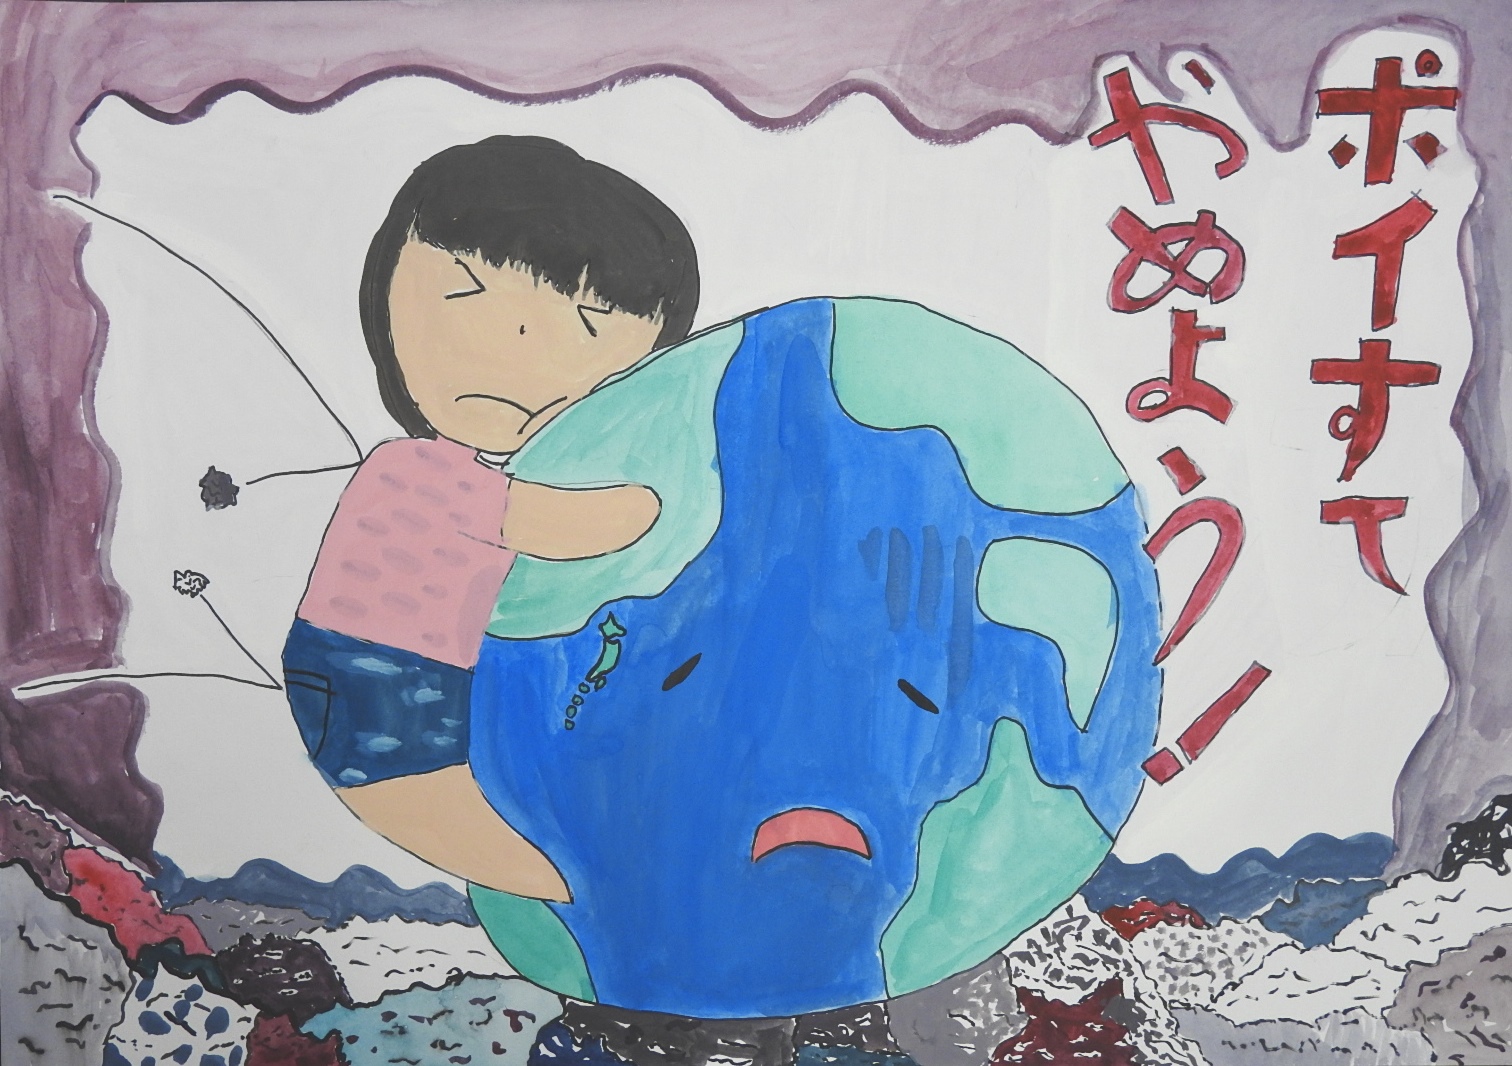 「ポイすてやめよう！」と書かれた、困り顔の地球に抱きついている子供のポスター